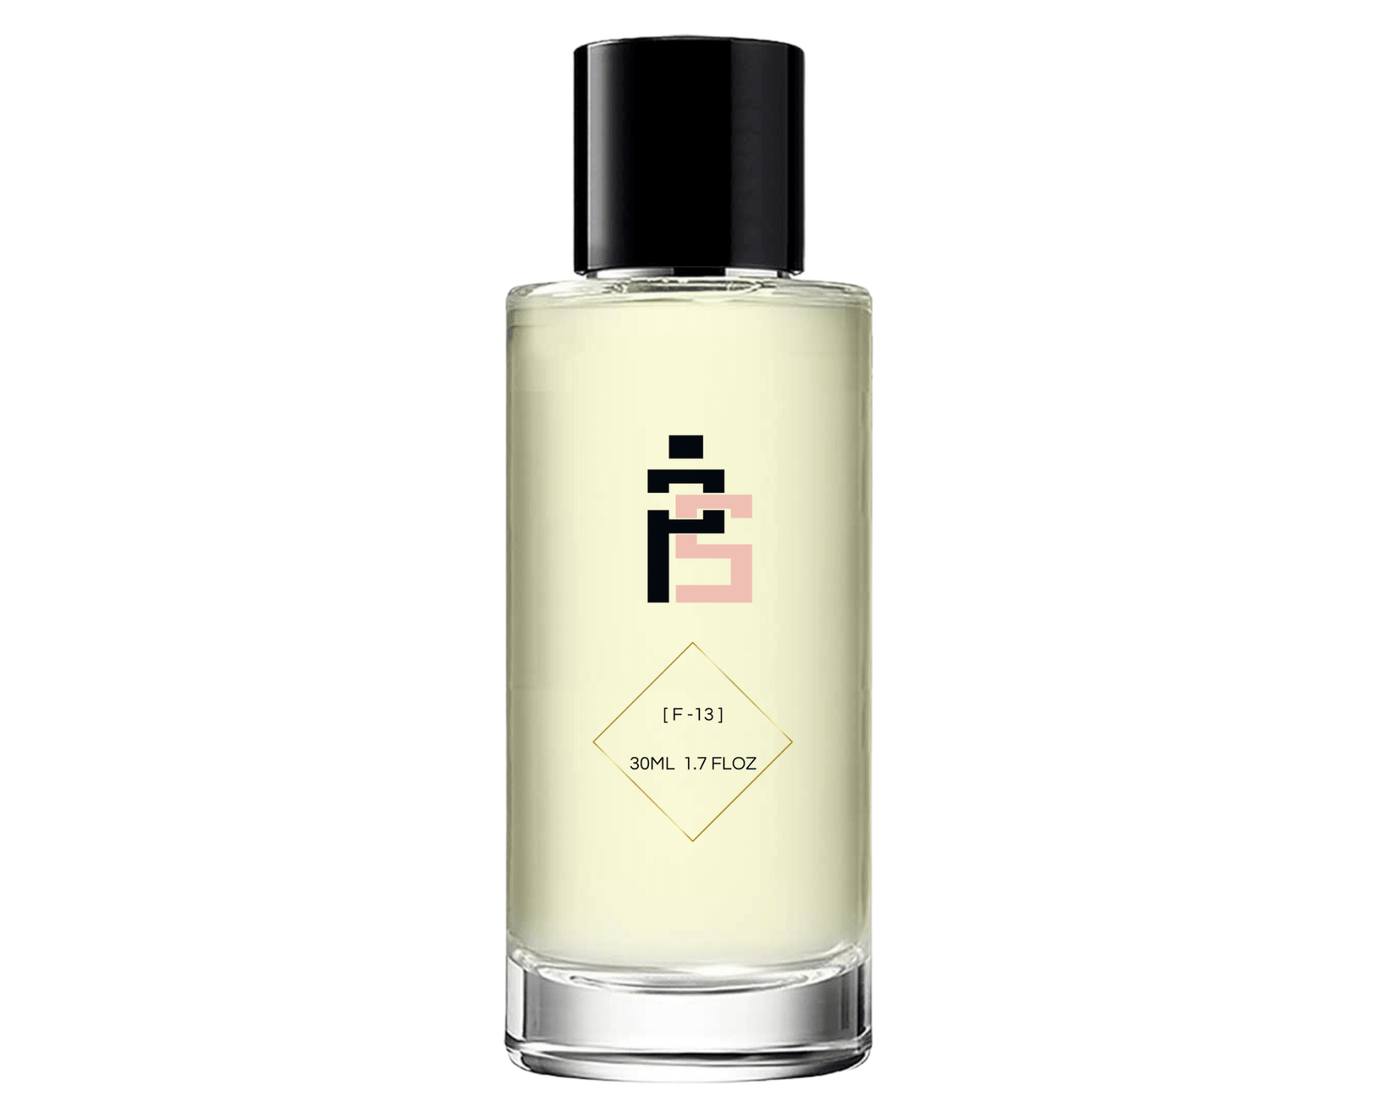 Parfum - F13| similaire à Rush